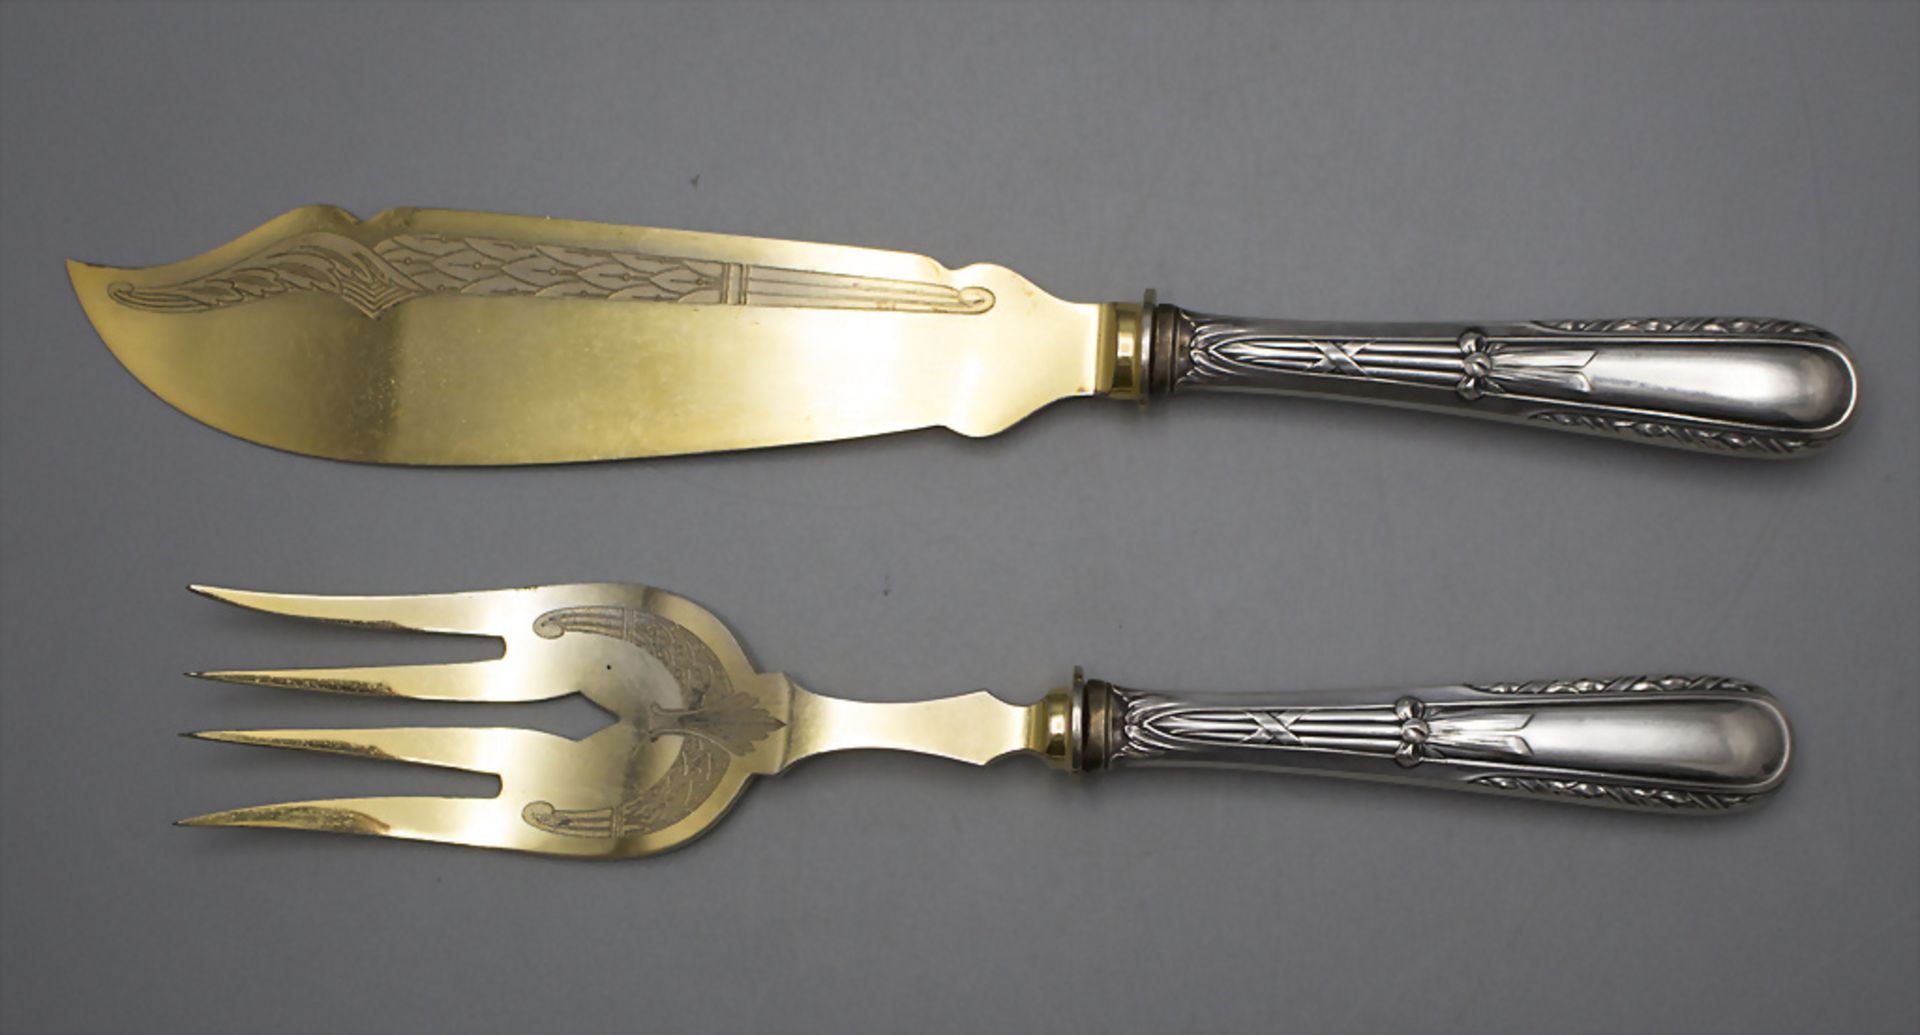 2 Teile Vorlegebesteck / A 2-piece set of serving cutlery, um 1900 - Bild 3 aus 4